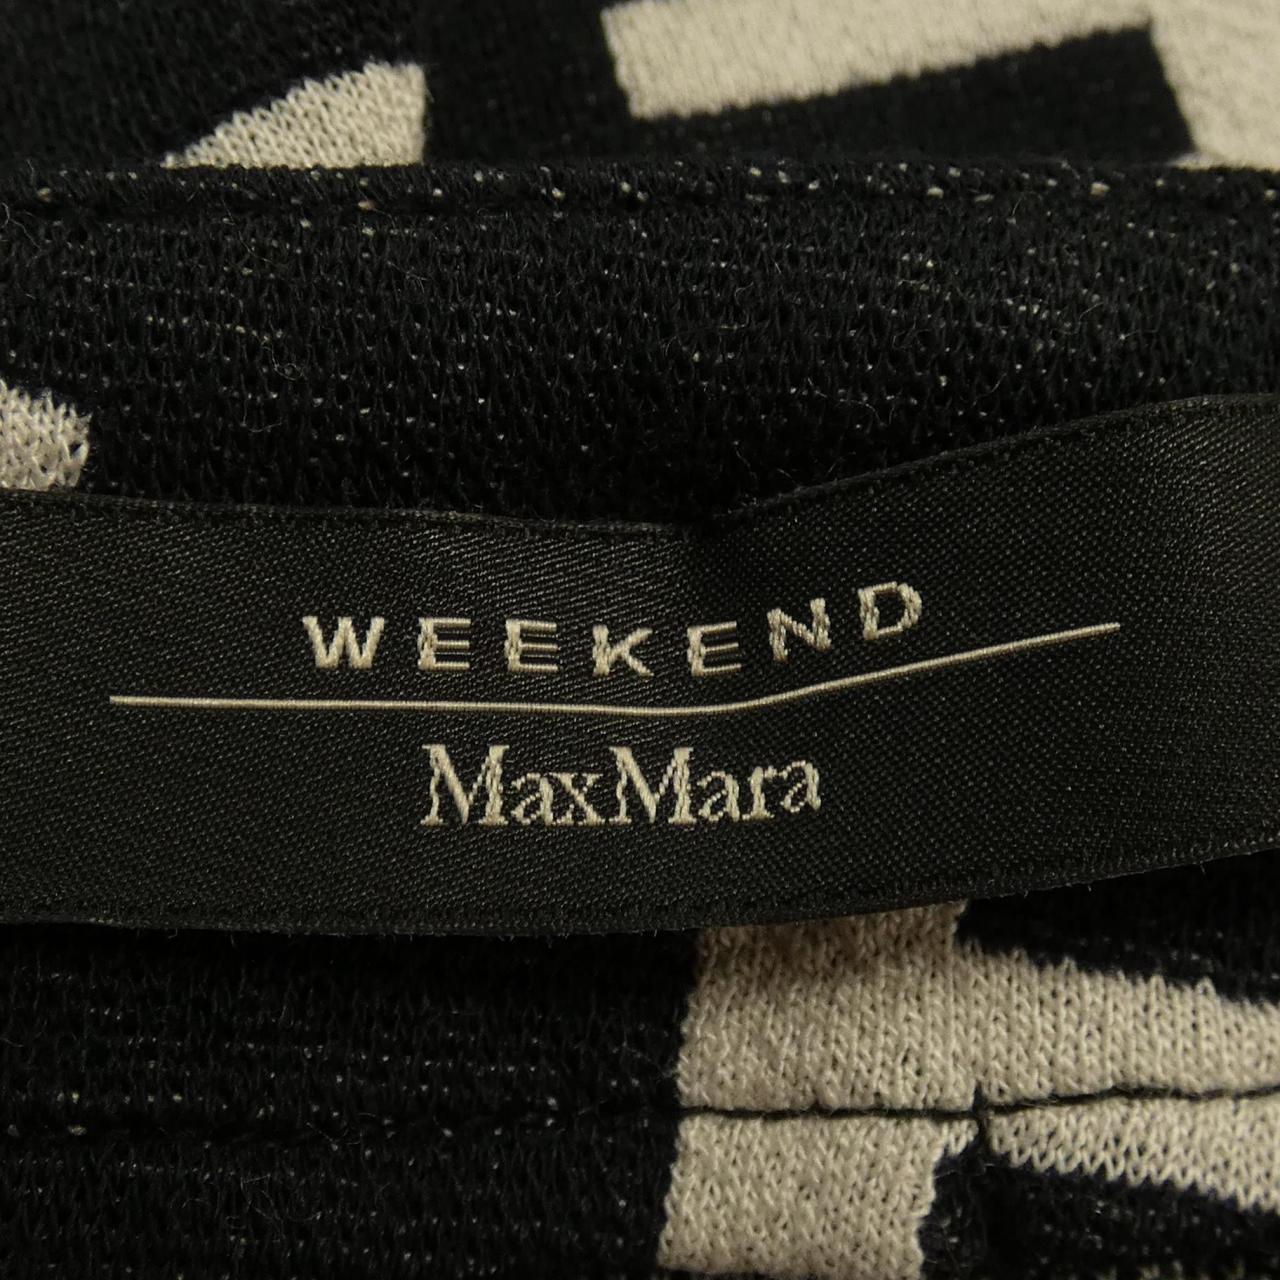 マックスマーラウィークエンド Max Mara weekend スカート